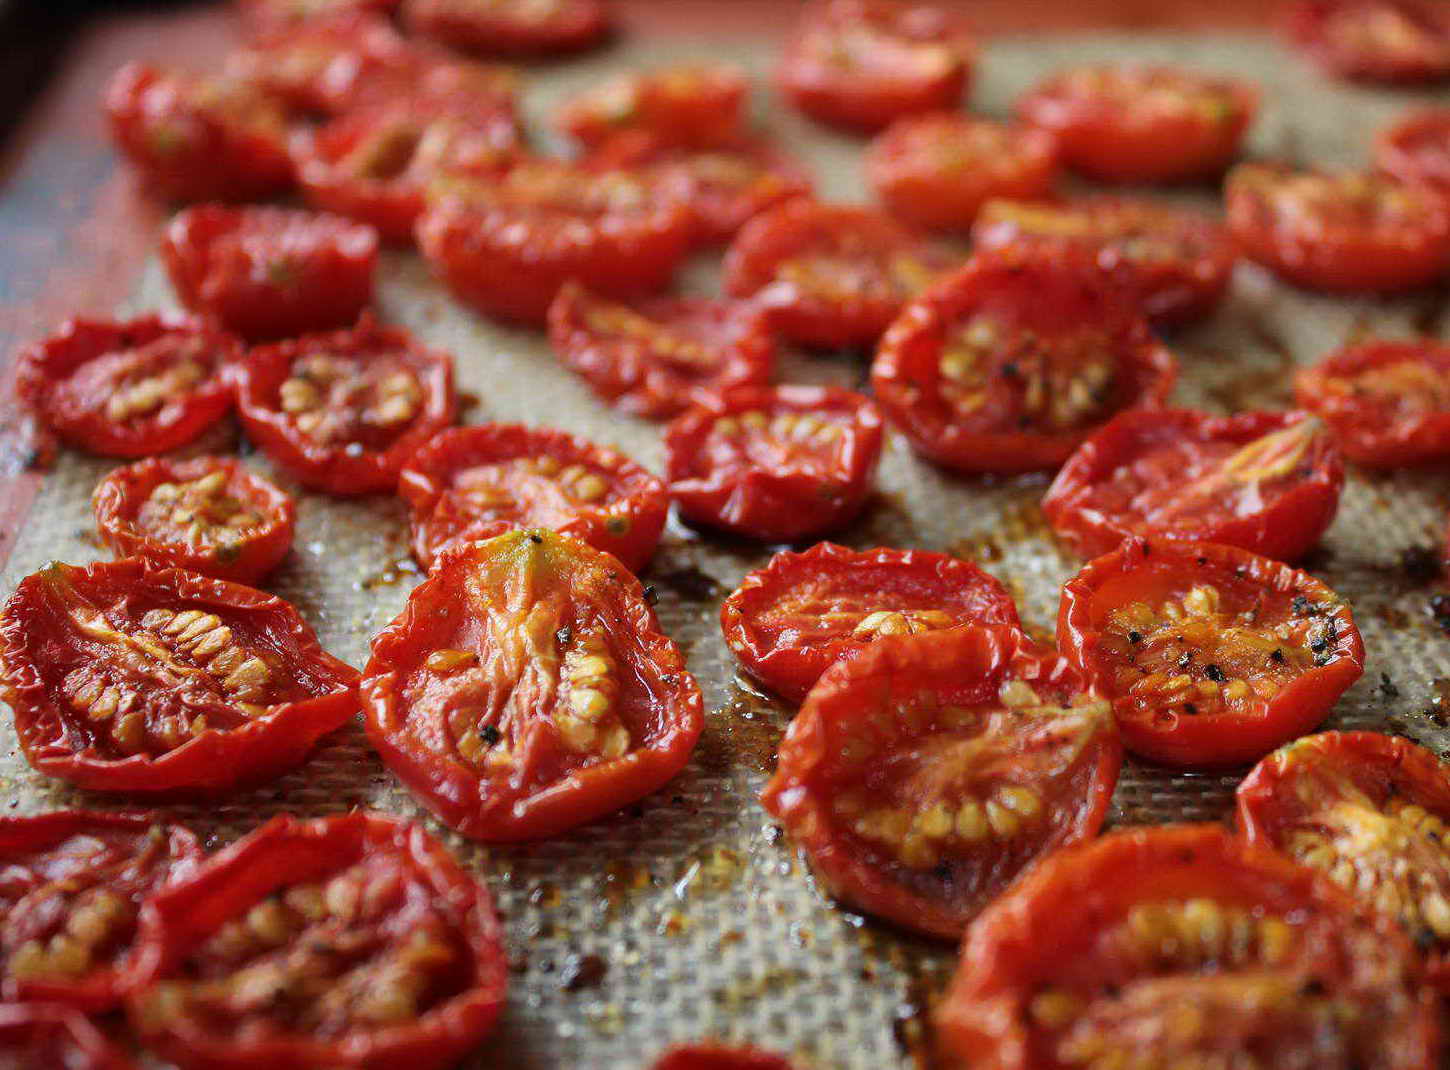 vyalenye pomidory v domashnikh usloviyakh: recepty na zimu58 Вялені помідори в домашніх умовах: рецепти на зиму